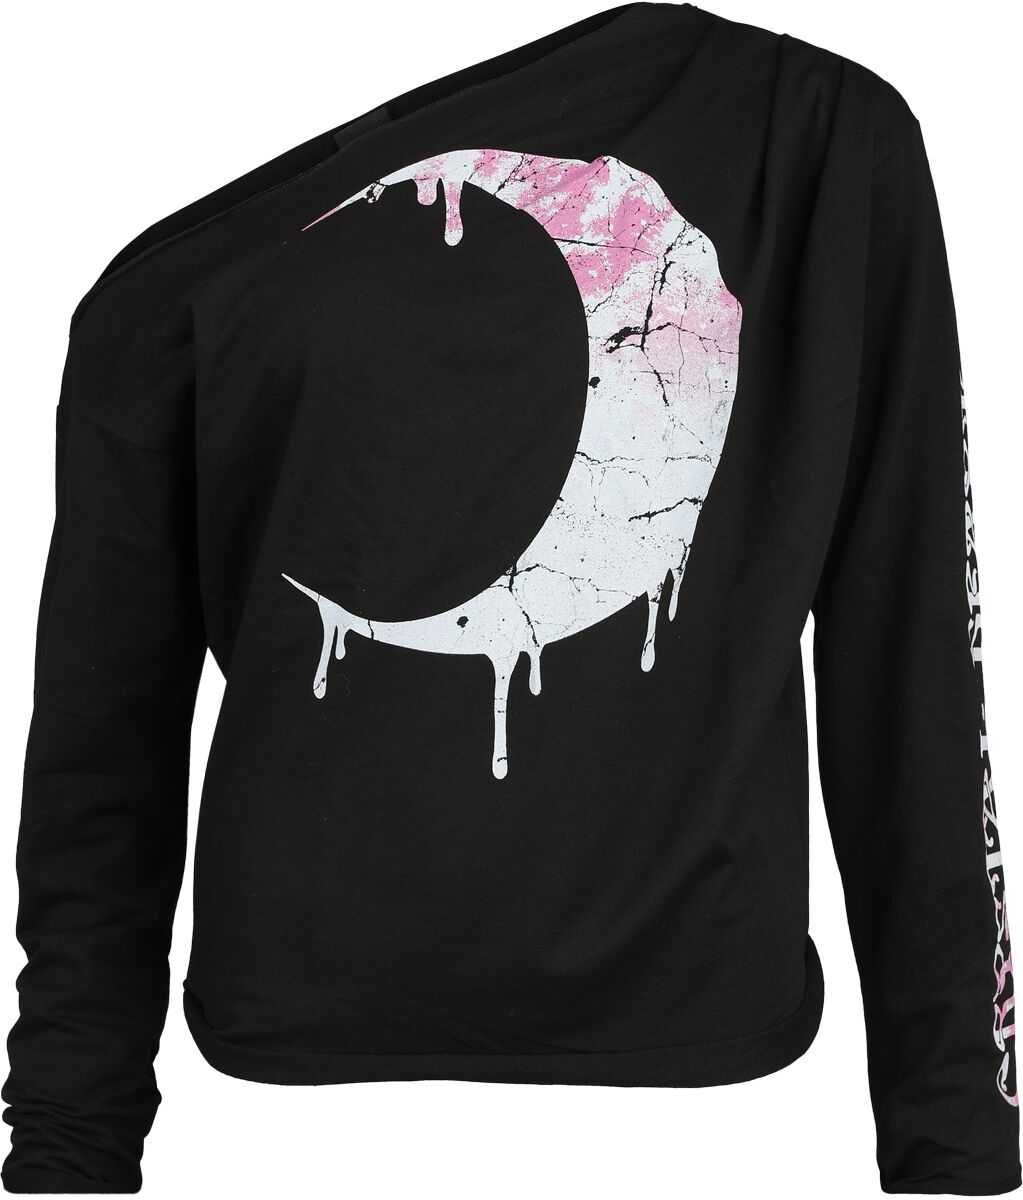 Outer Vision - Gothic Sweatshirt - Artemis - S bis XXL - für Damen - Größe S - schwarz